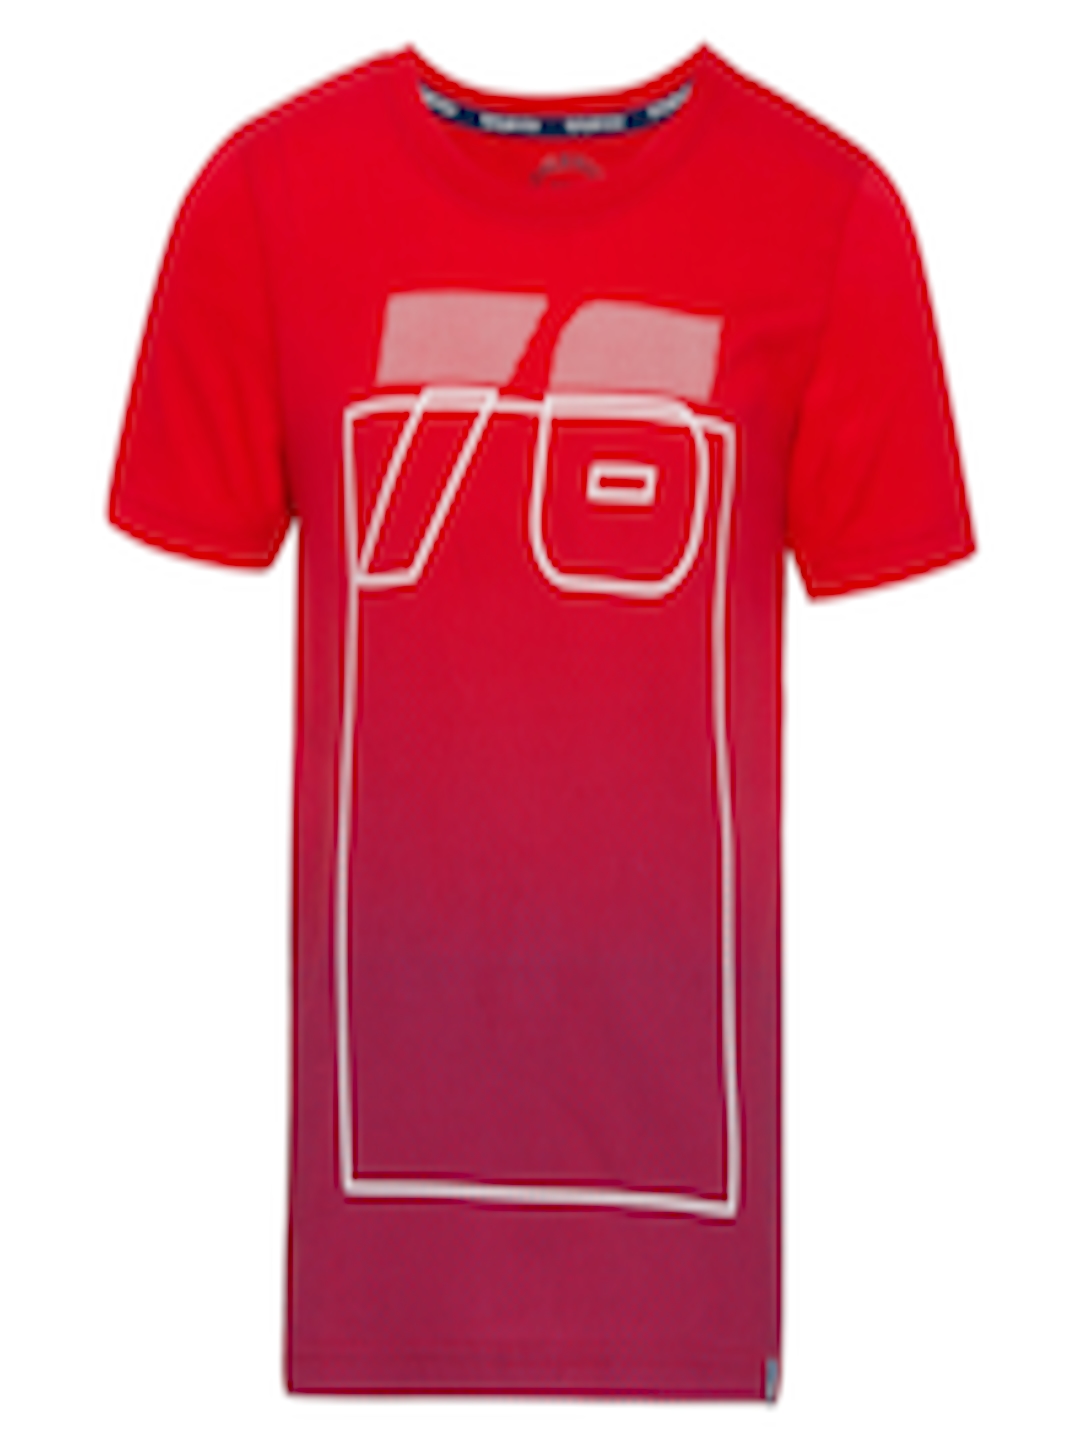 Buy Jockey Boys Red White Printed Pure Cotton T Shirt - Tshirts for ...